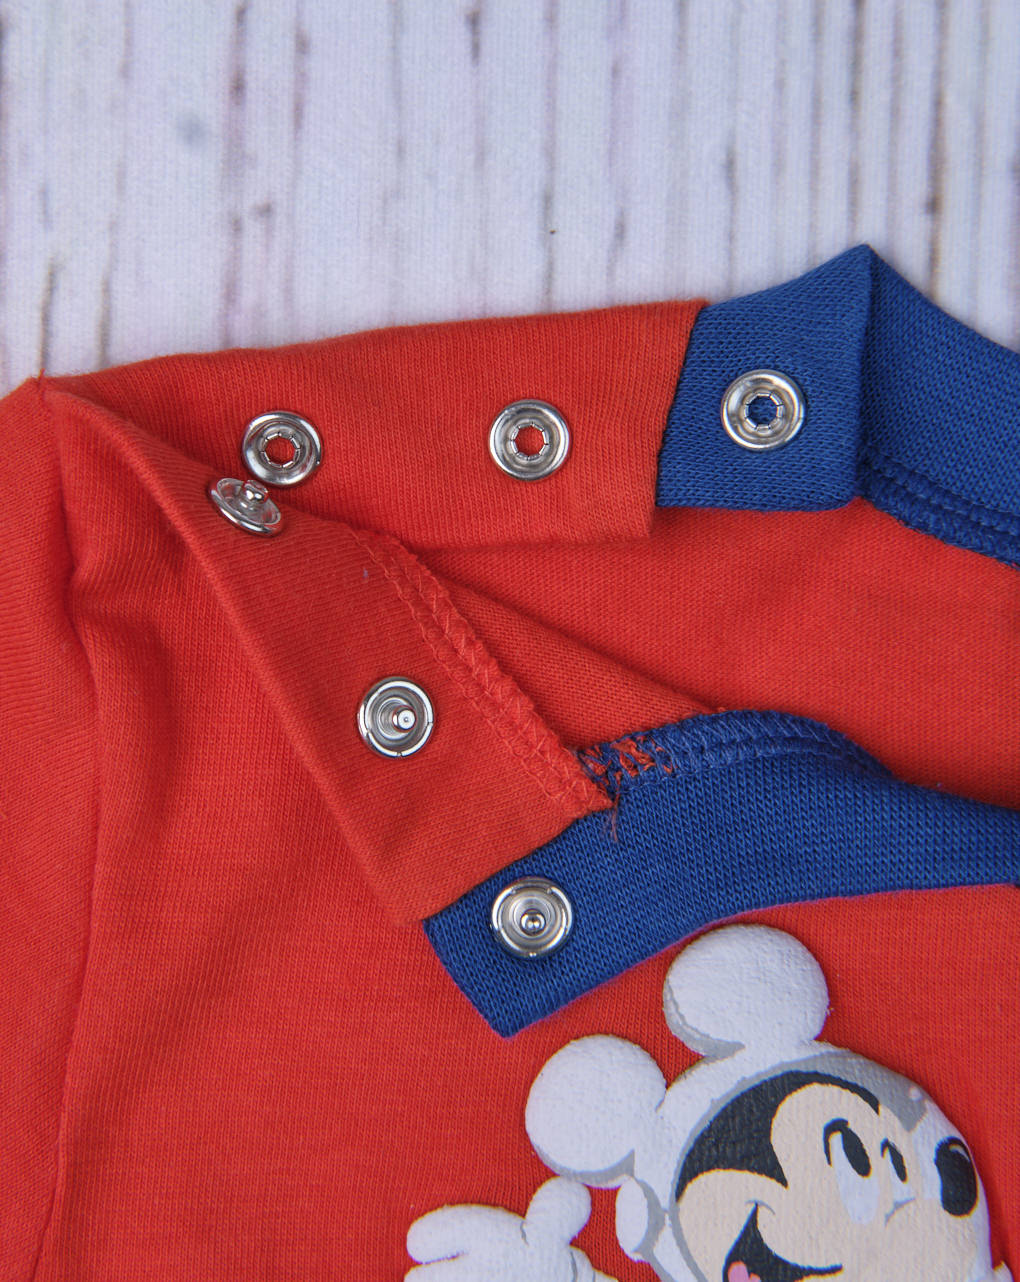 πιτζάμα ολόσωμη jersey με mickey mouse για αγόρι - Prénatal